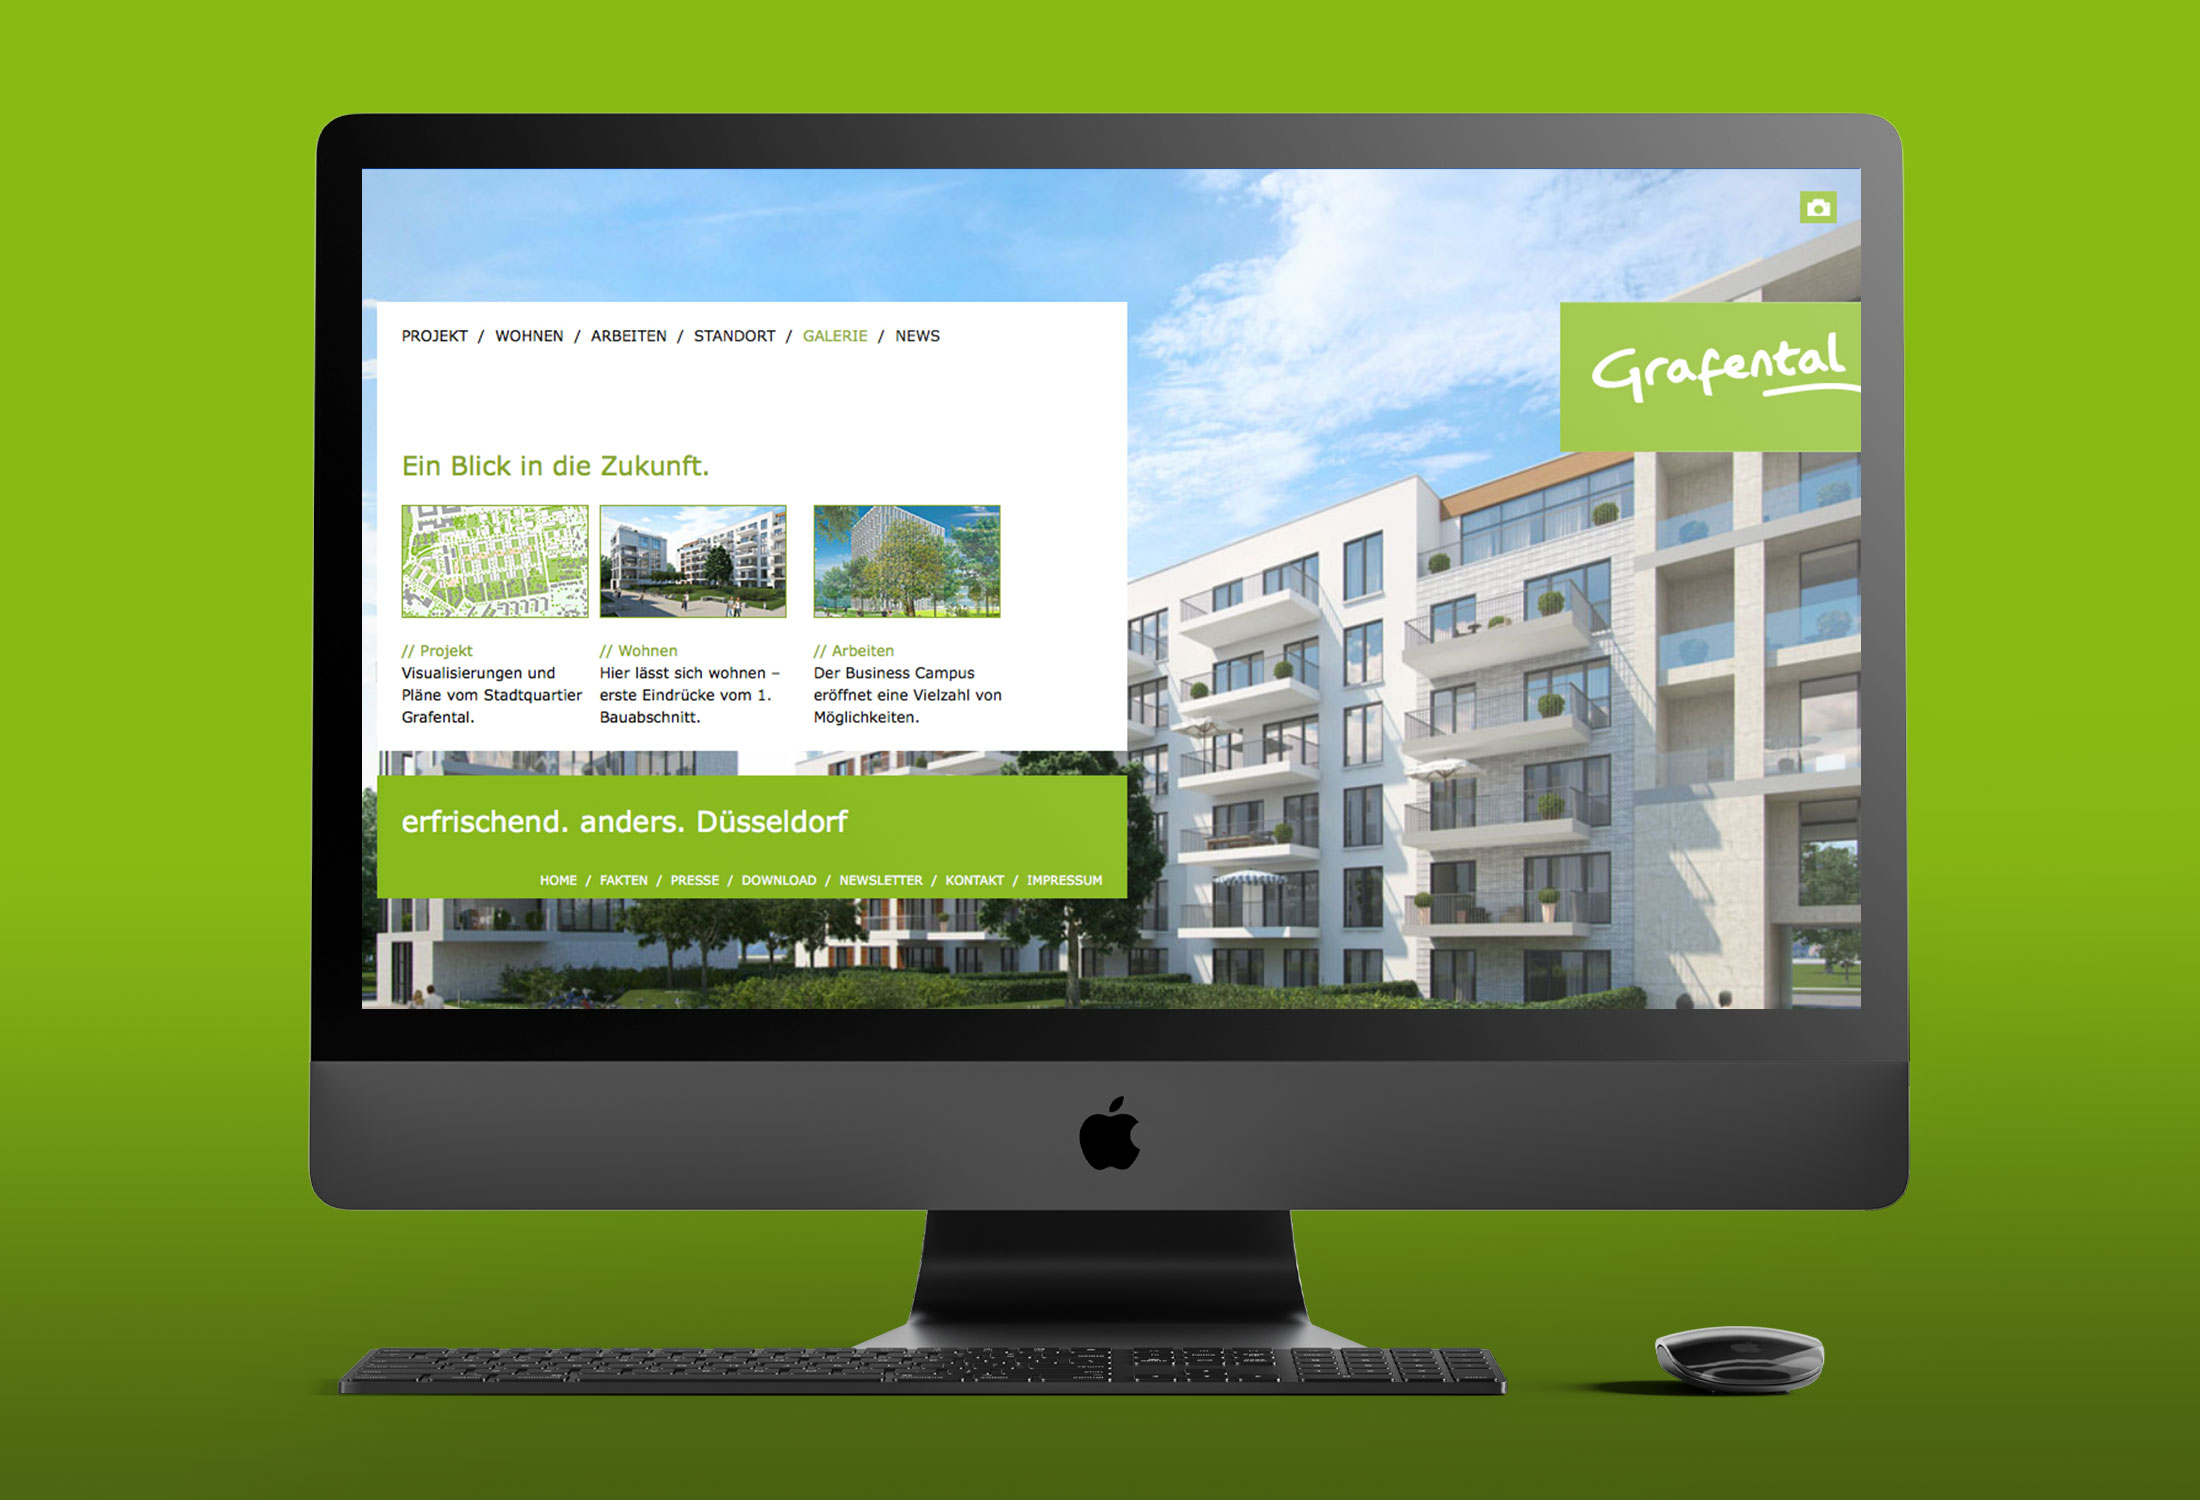 immobilienmarketing-zb2-grafental-website4